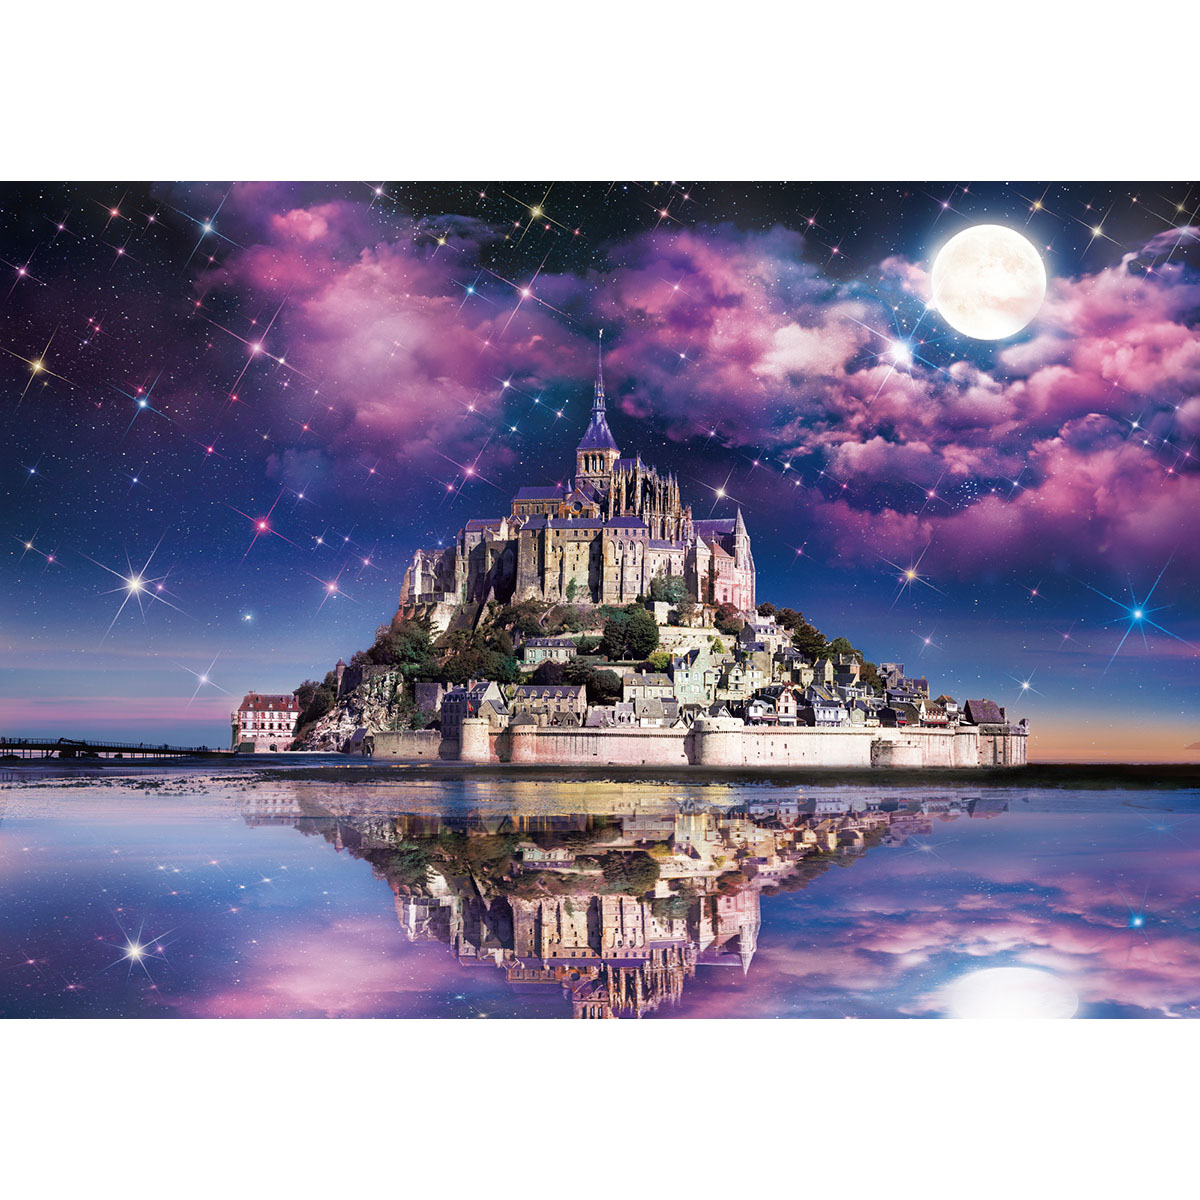 몽생미셸 성, 별빛이 내리는 밤